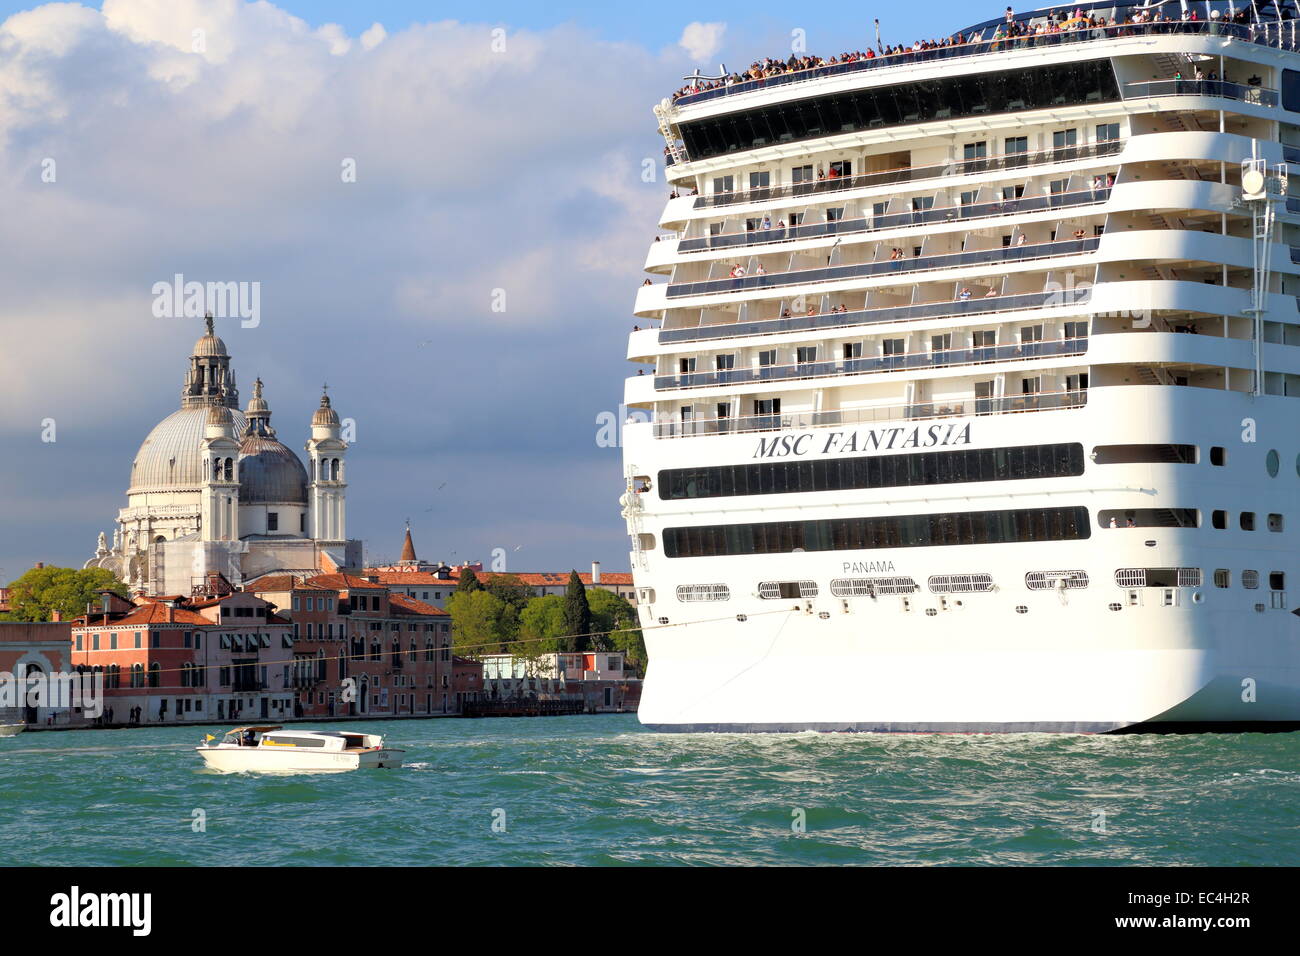 Grande nave da crociera accanto alla chiesa salutano a Venezia. MSC Fantasia, IMO 9359791 Foto Stock